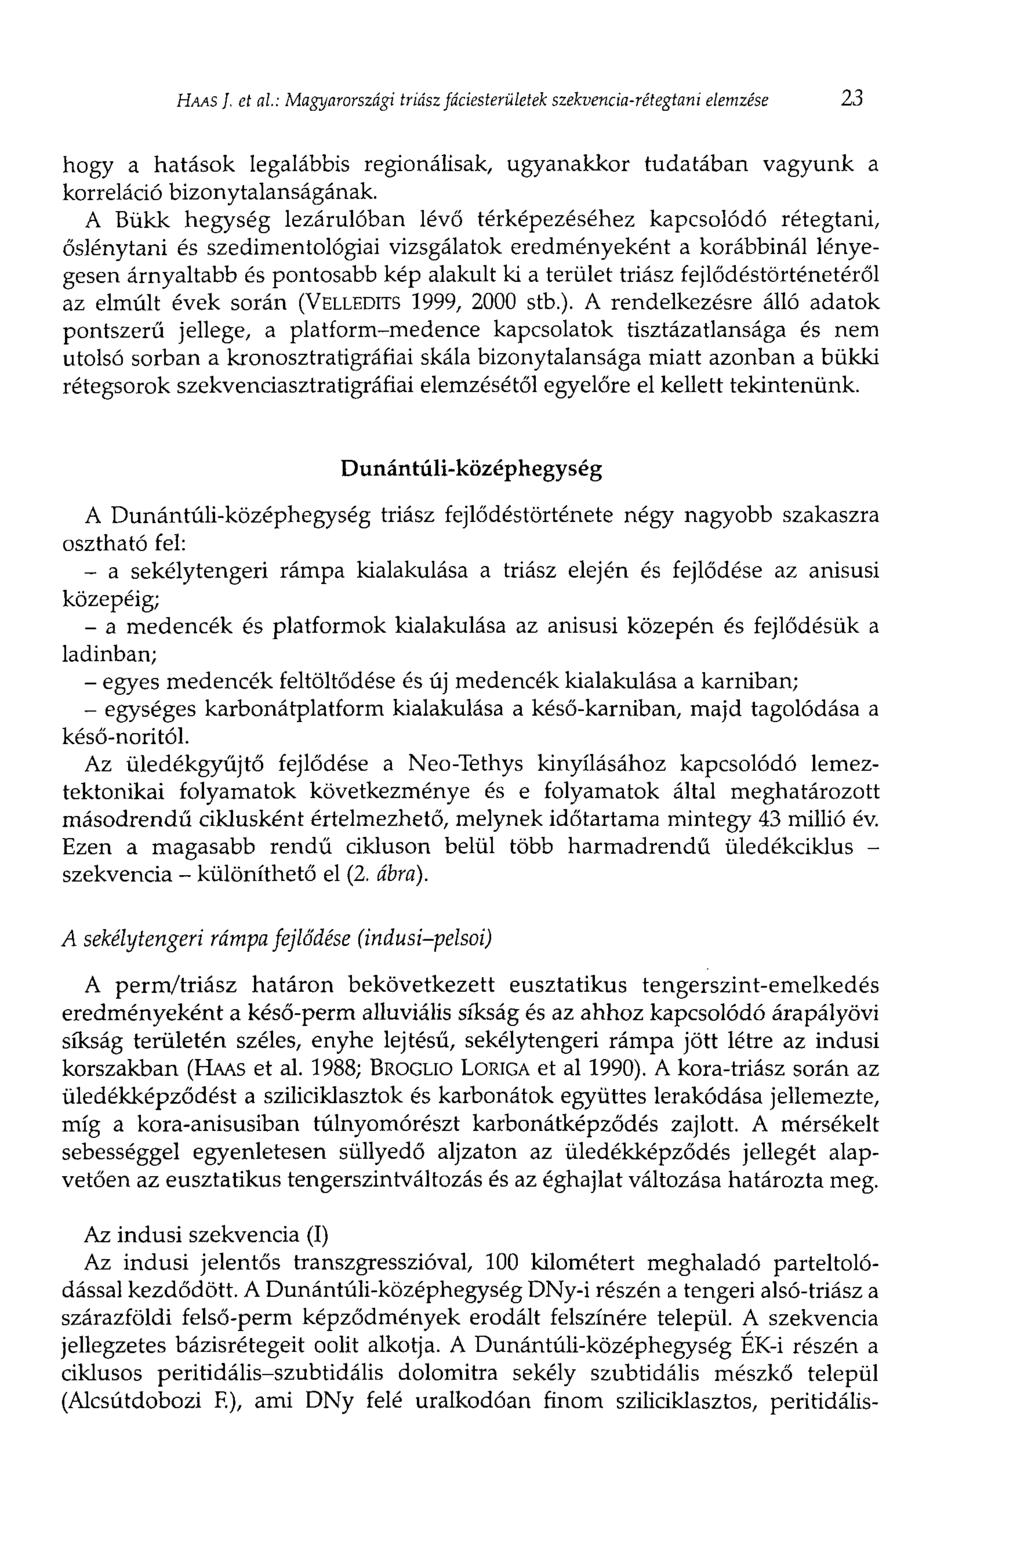 HAAS J. et al: Magyarországi triász Jáciesterületek szekvencia-rétegtani elemzése 23 hogy a hatások legalábbis regionálisak, ugyanakkor tudatában vagyunk a korreláció bizonytalanságának.